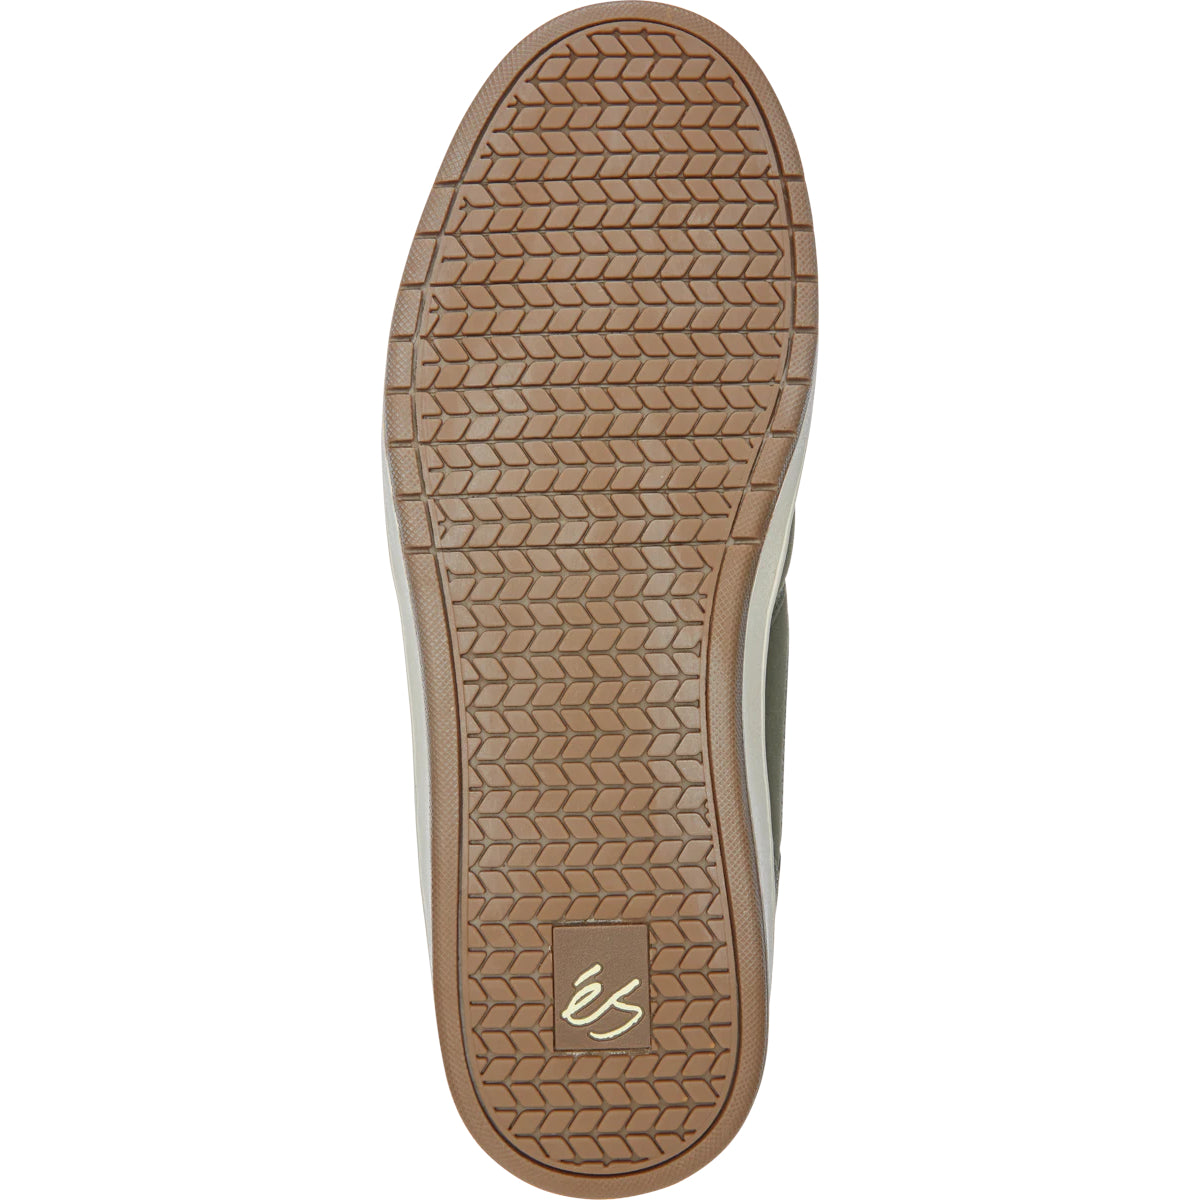 Olive/Tan Accel Slim eS Skateboarding Shoe Bottom